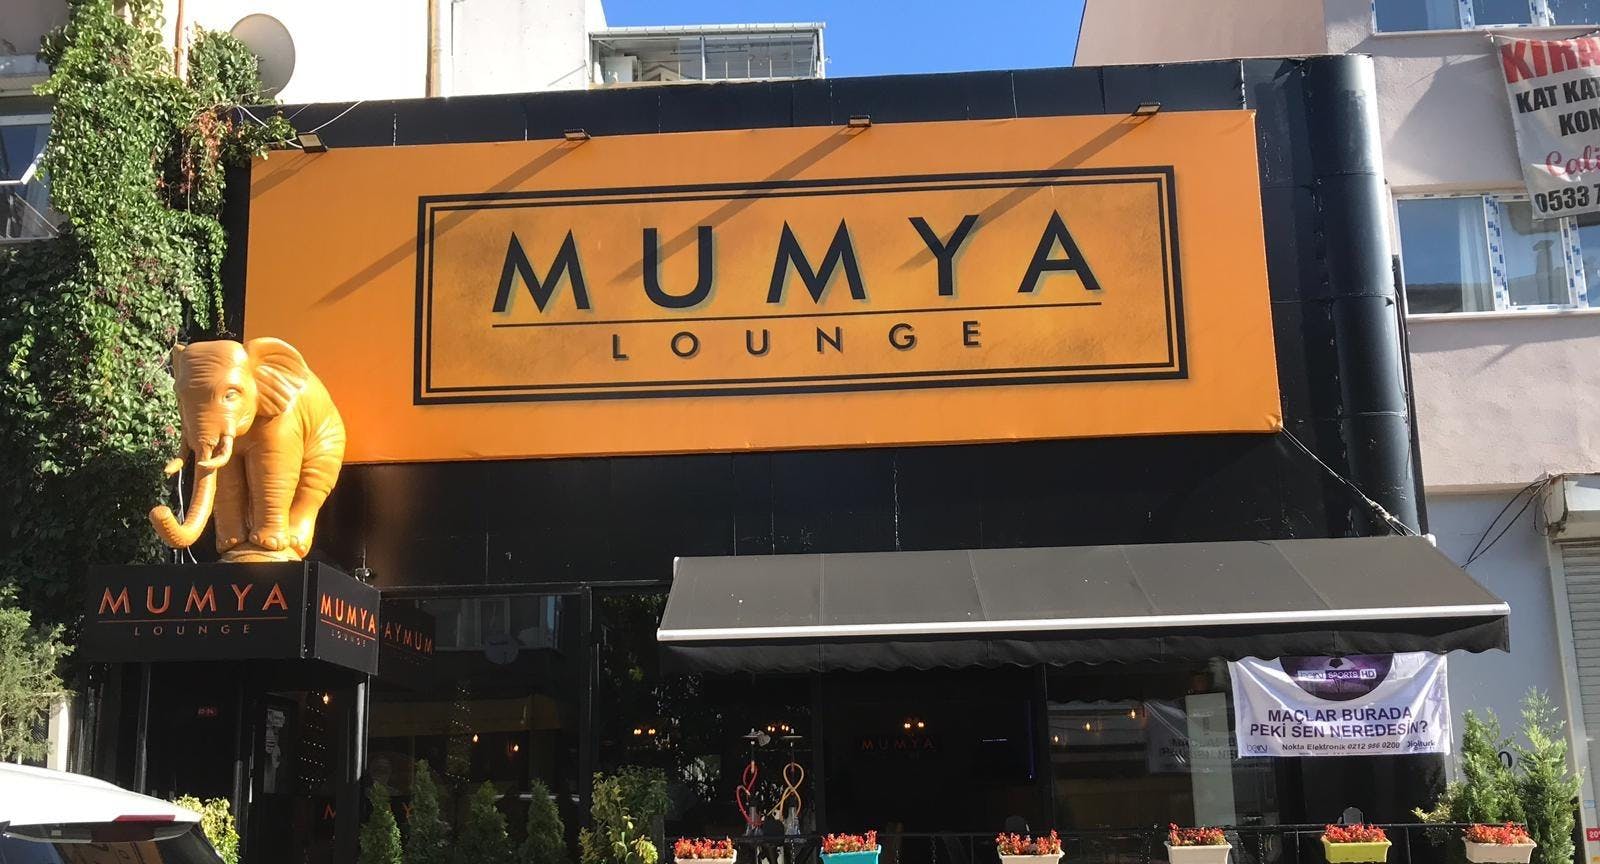 Beşiktaş, İstanbul şehrindeki Mumya Lounge Cafe Restaurant restoranının fotoğrafı